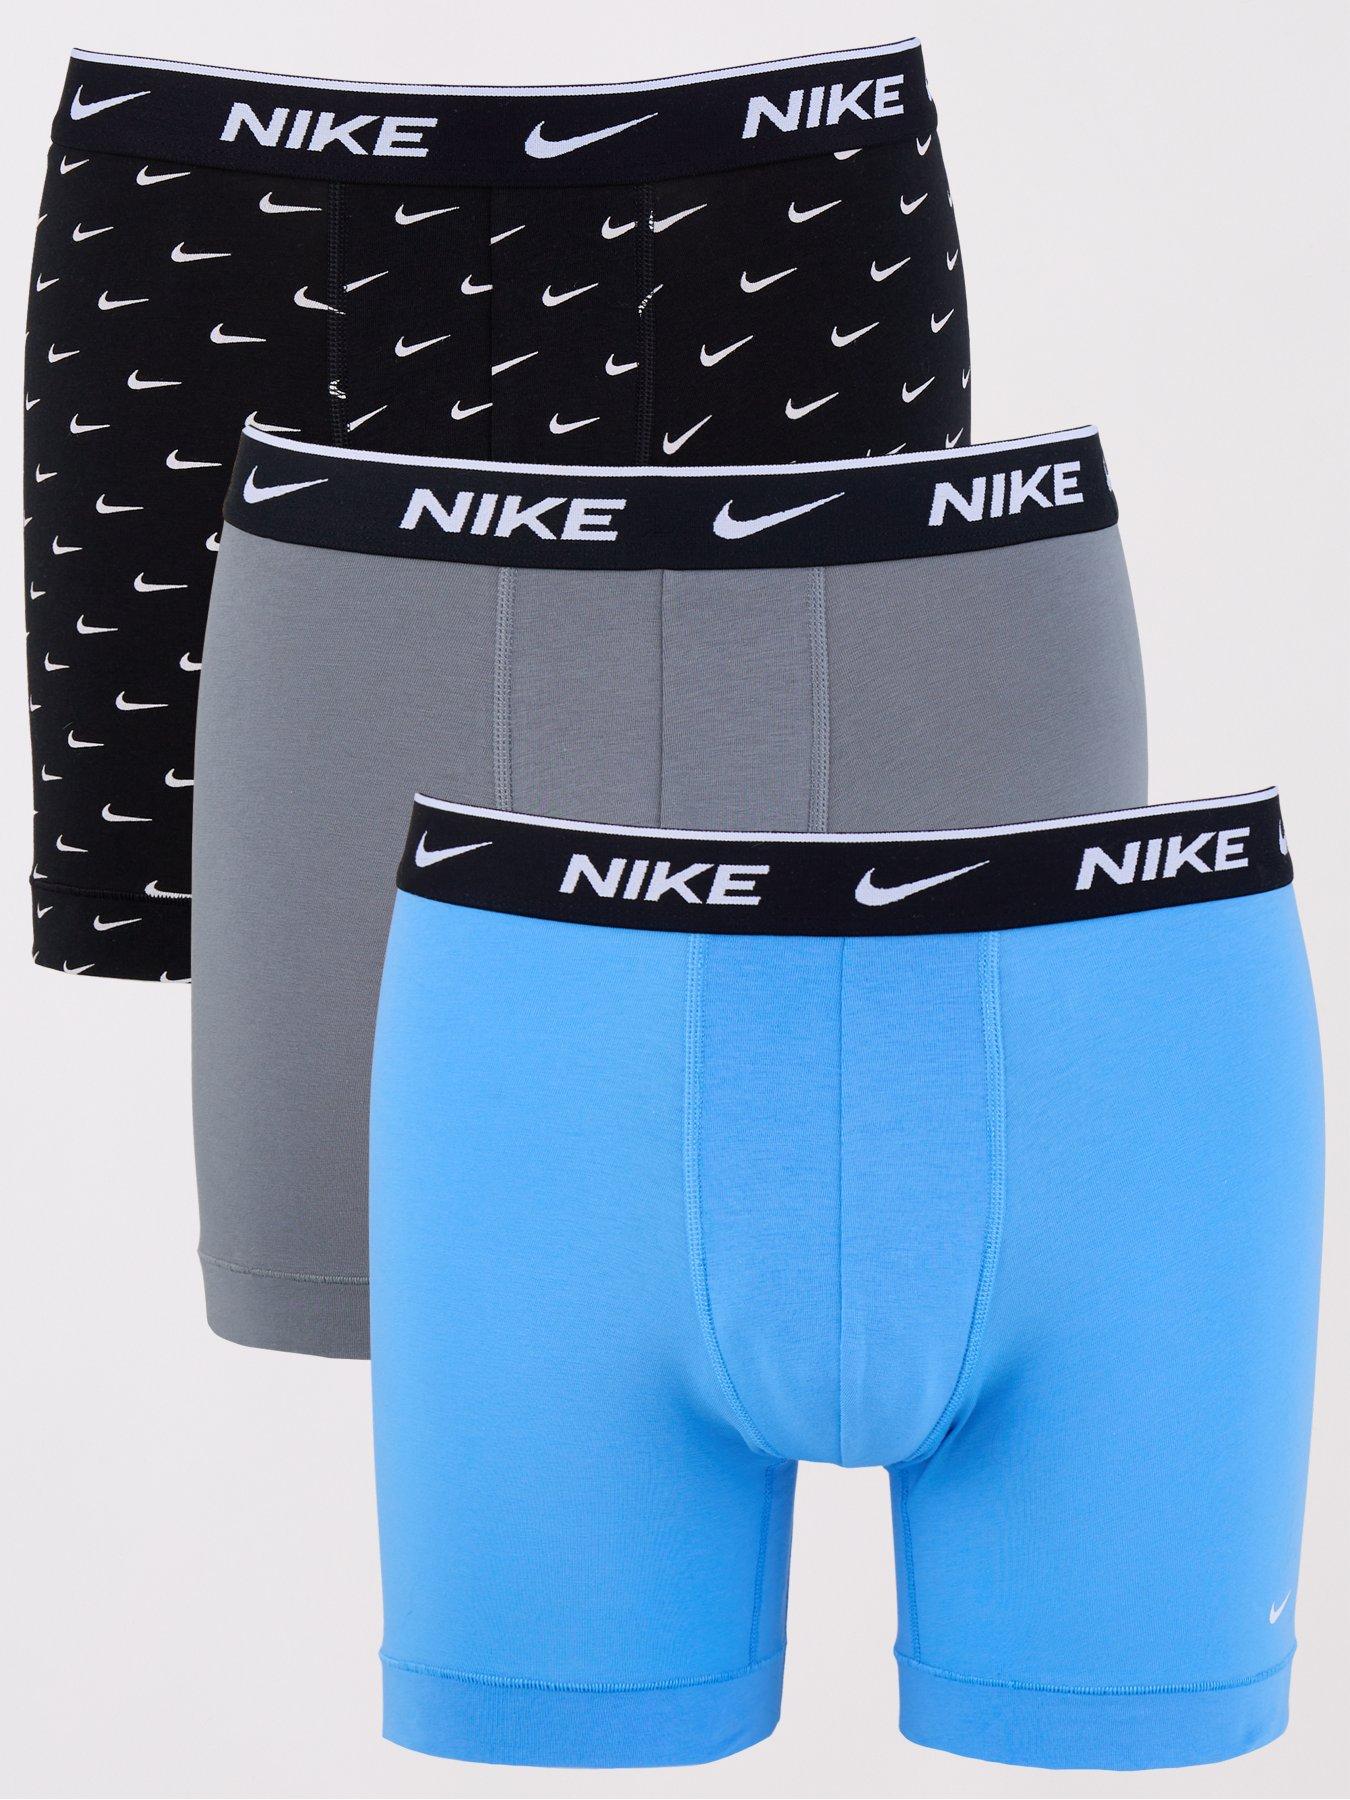 Underwear & socks, Men, Nike